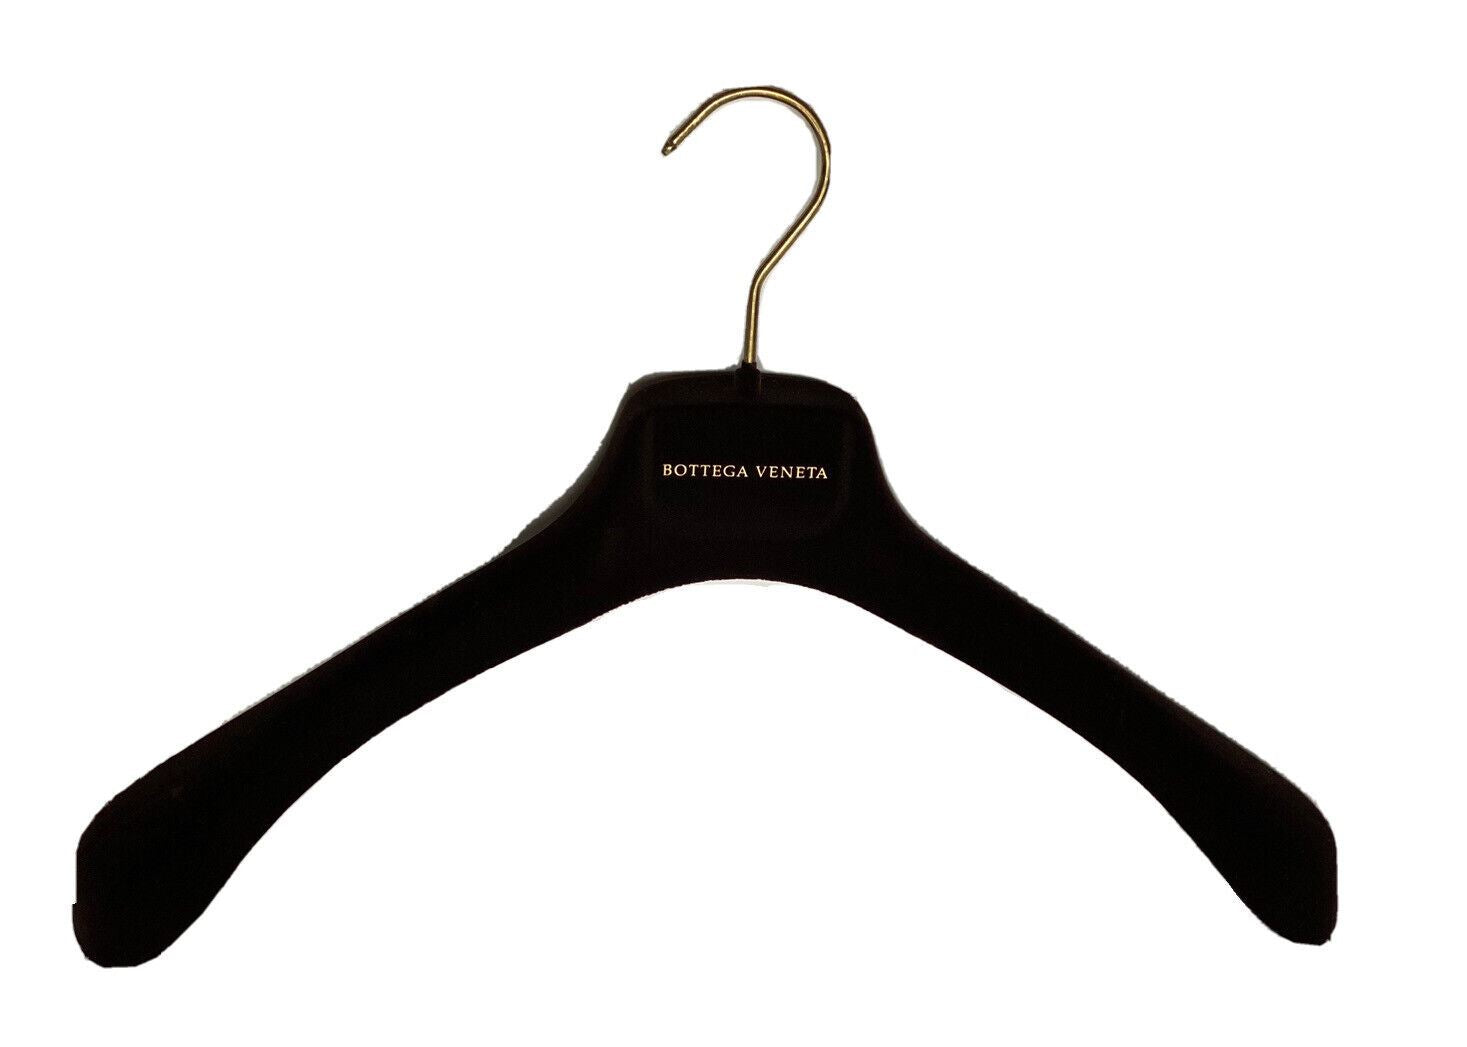 Bottega Veneta Braune Samt-Blazer-Pullover-Kleiderbügel mit goldenen Beschlägen, 16,5 x 7 x 2,5 